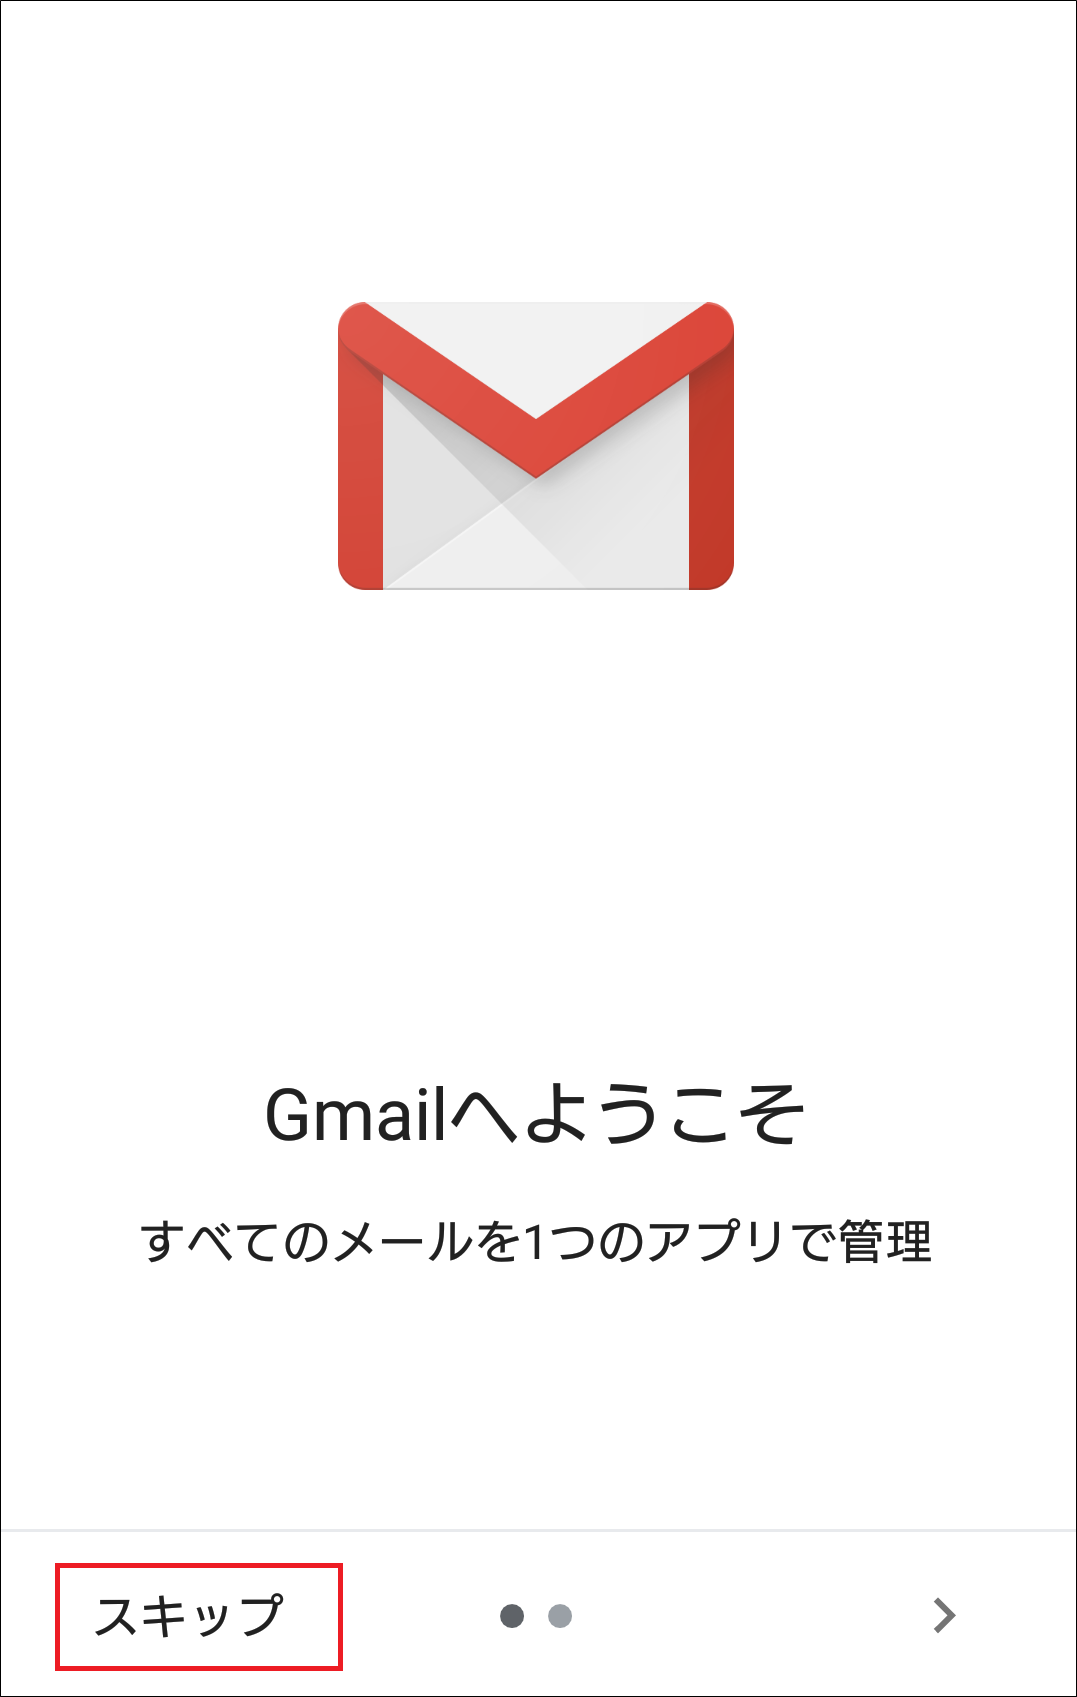 【Gmailへようこそ】画面より、「スキップ」をタップします。